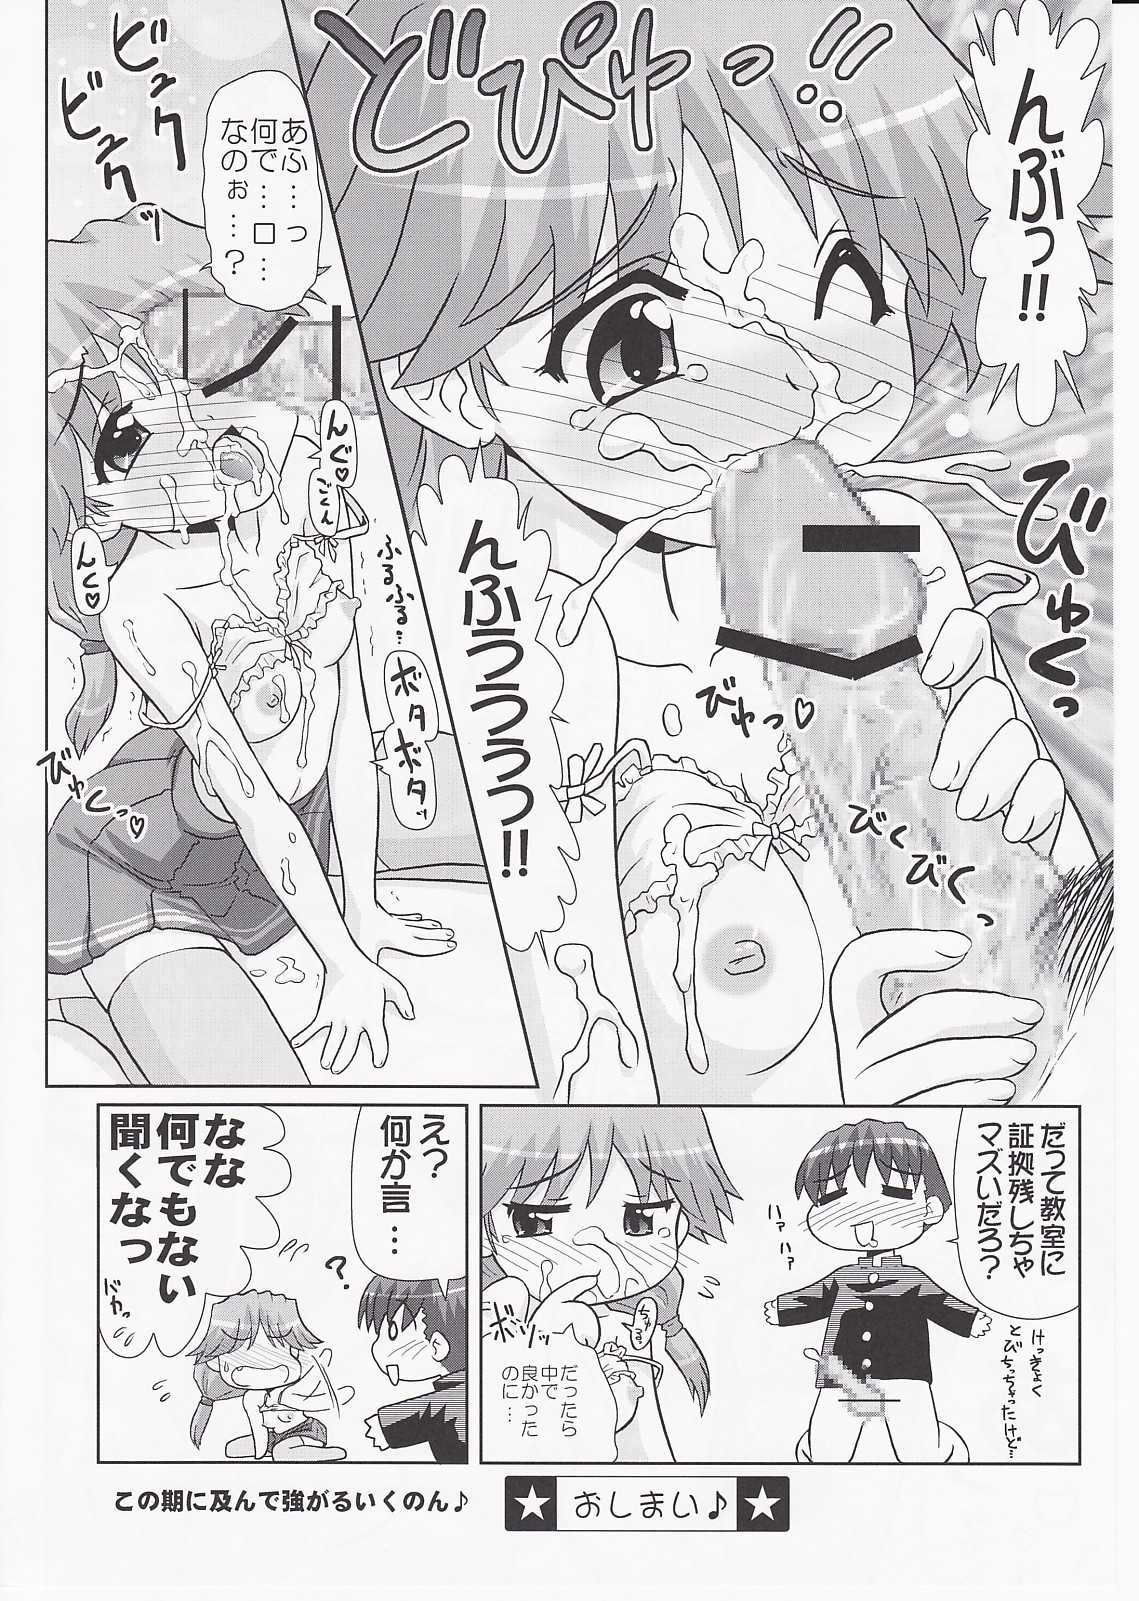 [PNO Group] Ikunon Manga 3 (ToHeart 2) 